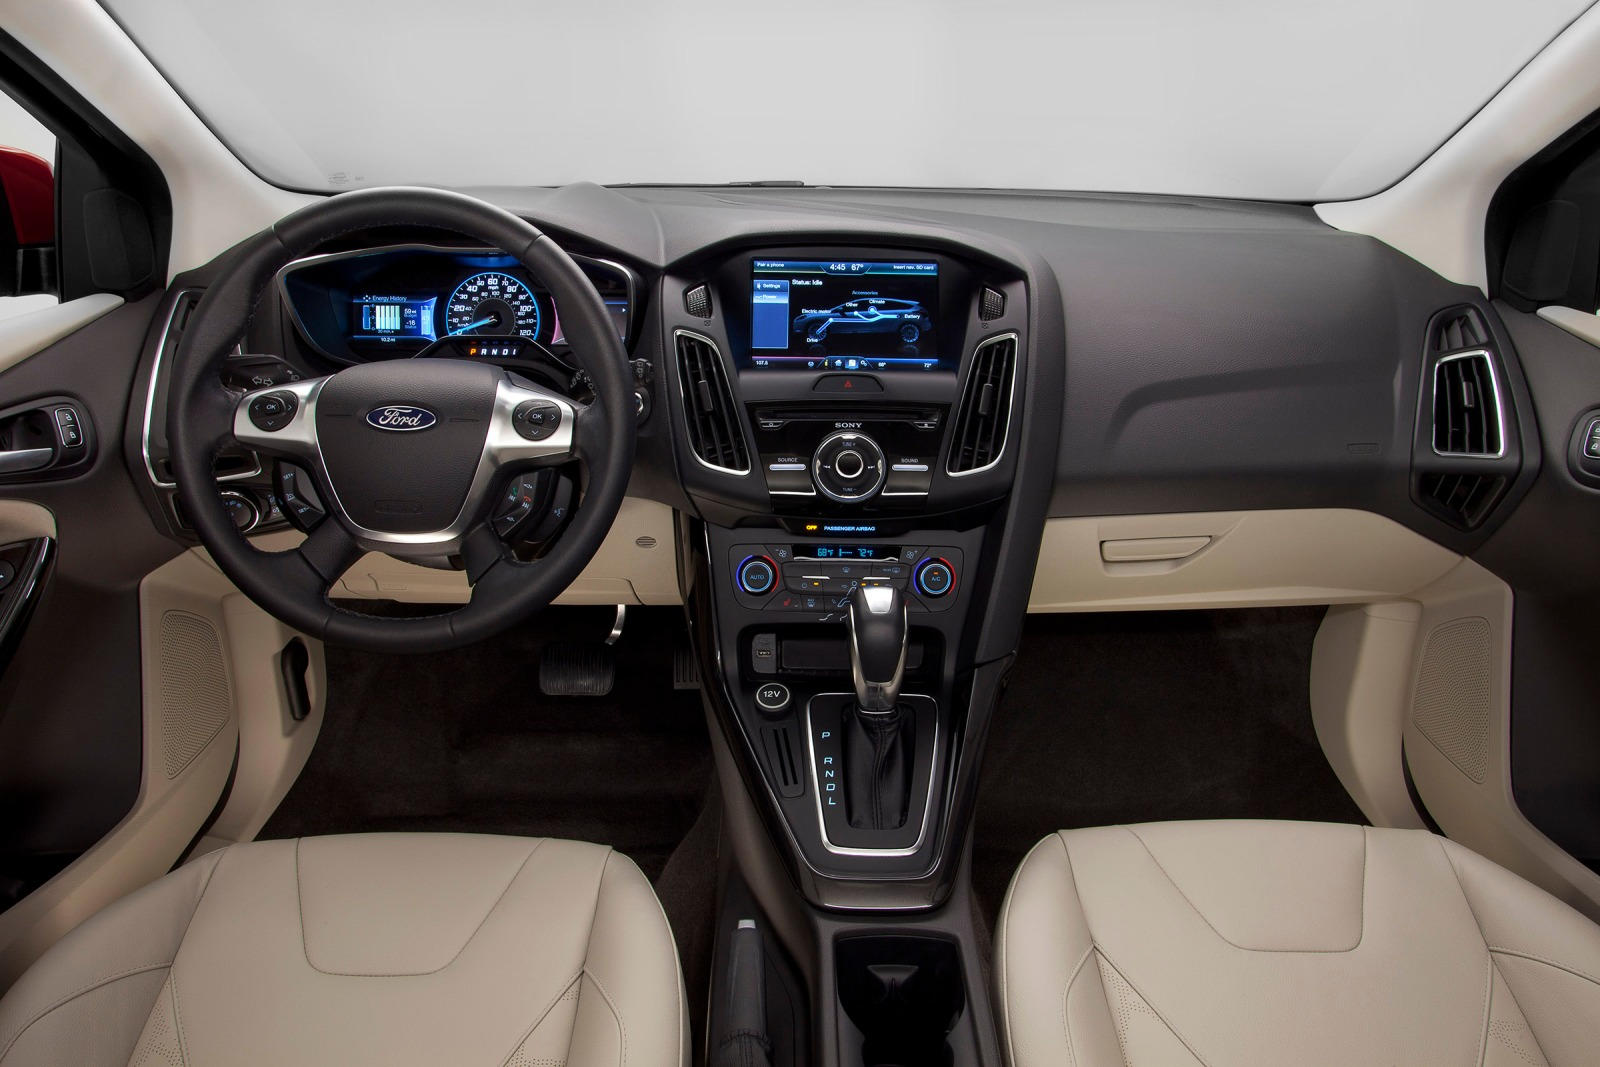 2013 Ford Focus Electric Interior 2